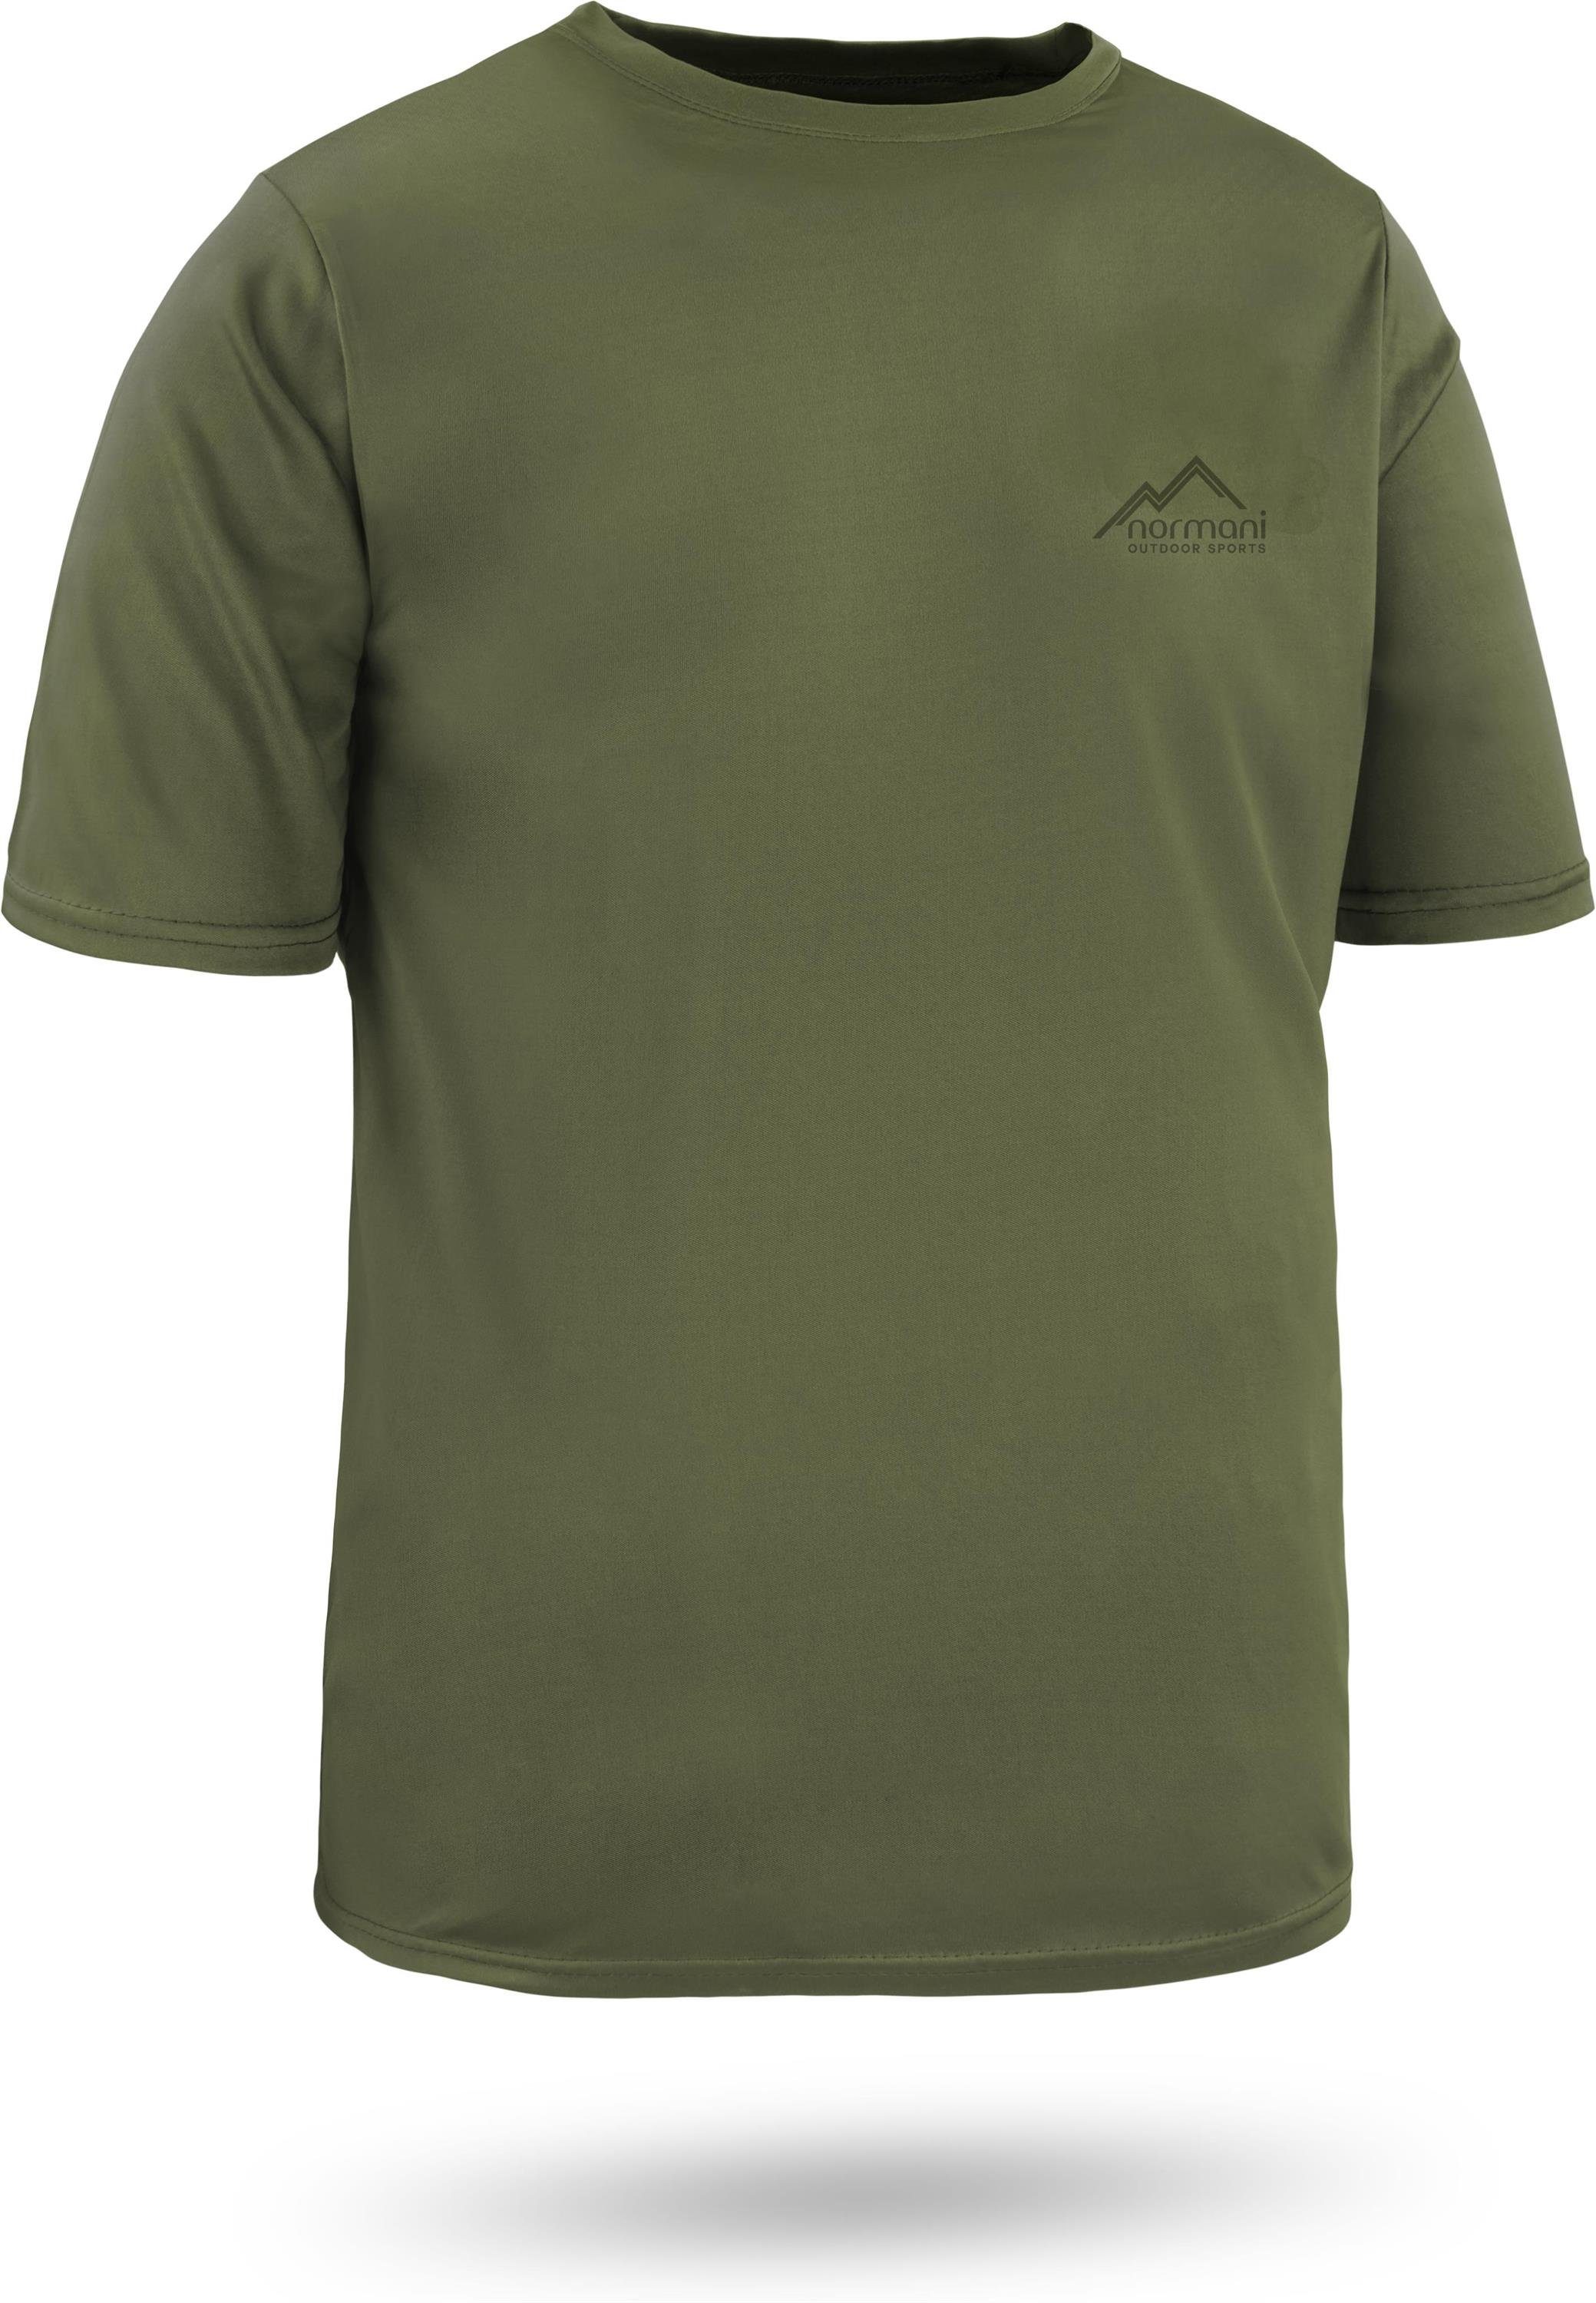 Agra normani Shirt Cooling-Material Kurzarm Fitness Funktions-Sport Sportswear Funktionsshirt Herren T-Shirt mt Grün